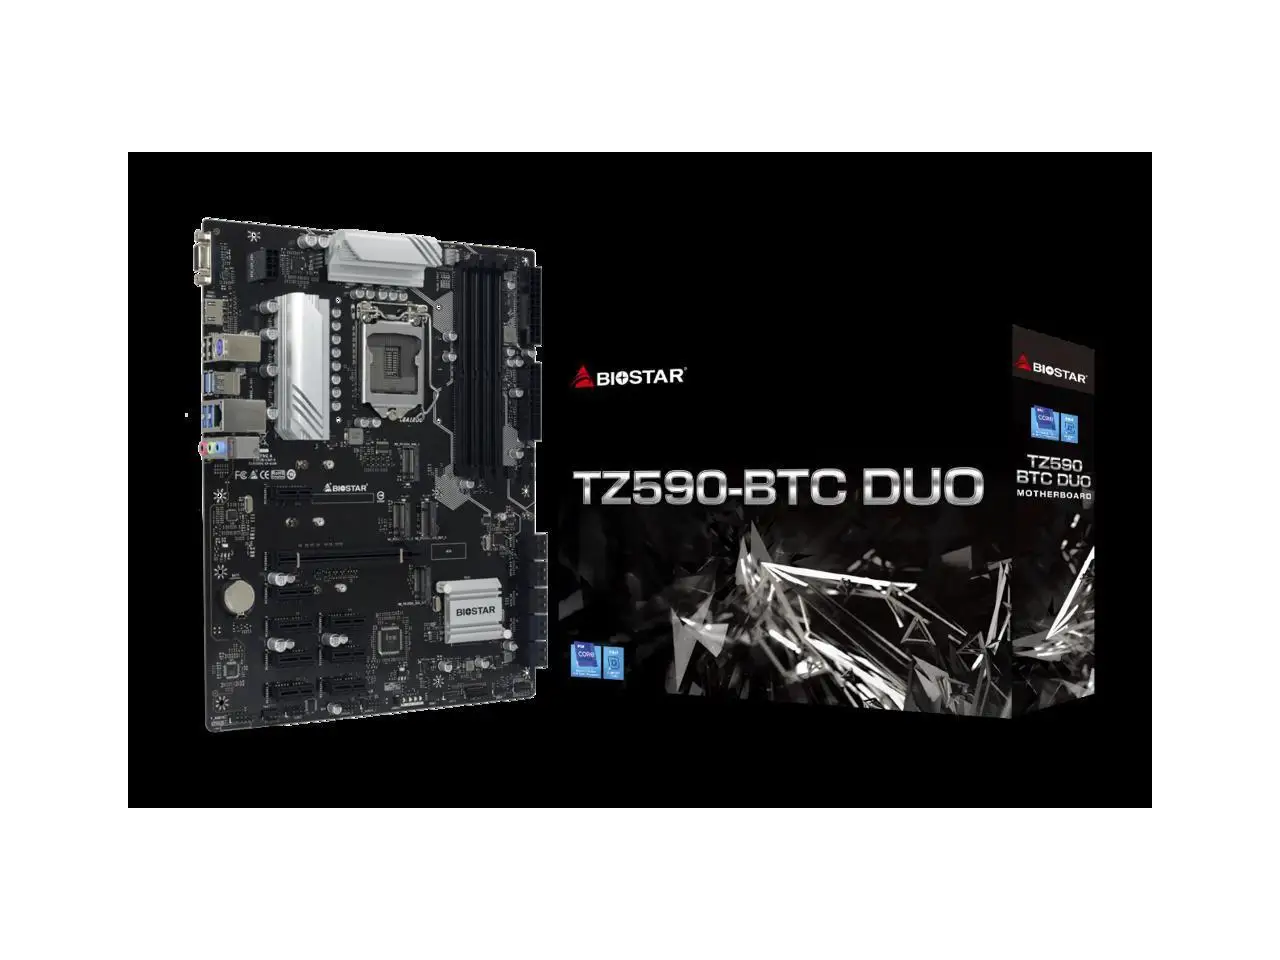 

Biostar TZ590-BTC Duo (Intel 10th and 11th Gen) LGA 1200 Intel Z590 9 GPU Support GPU Mining Motherboard.